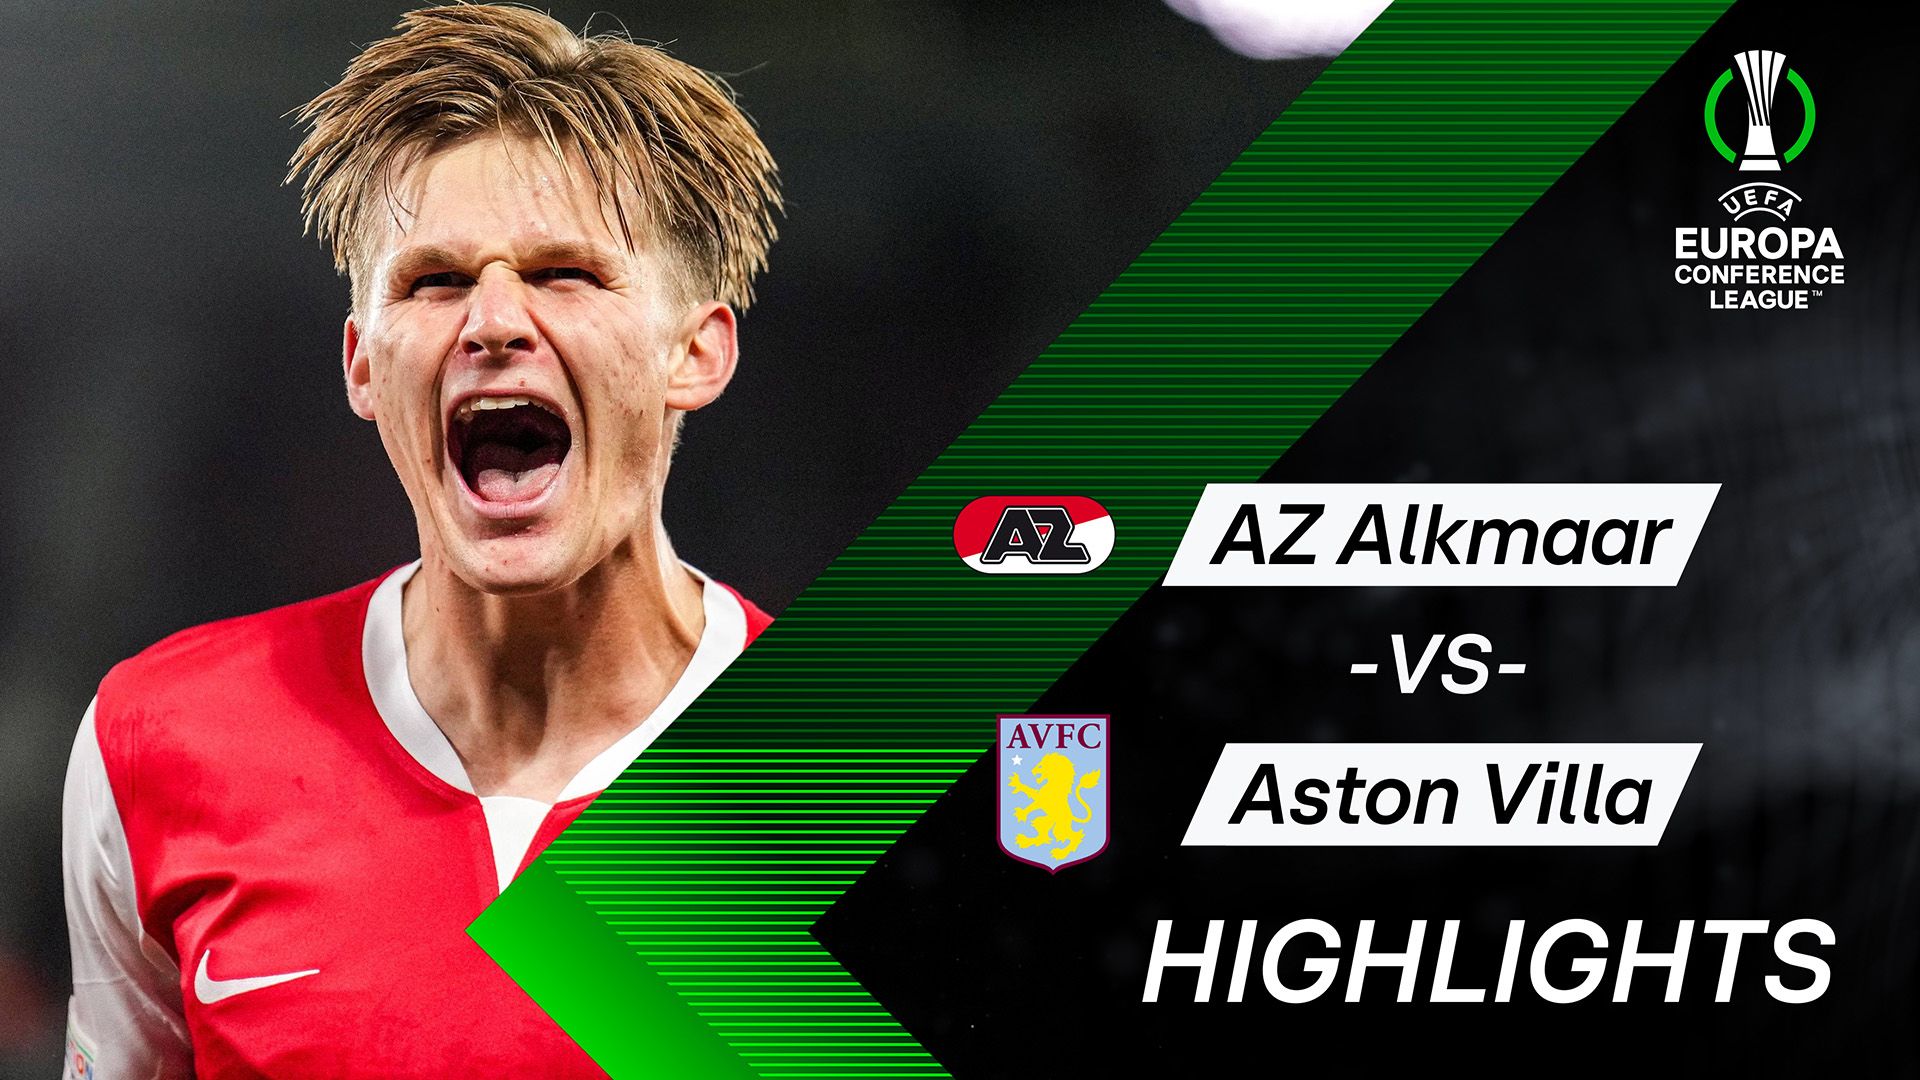 Highlights: AZ Alkmaar vs. Aston Villa